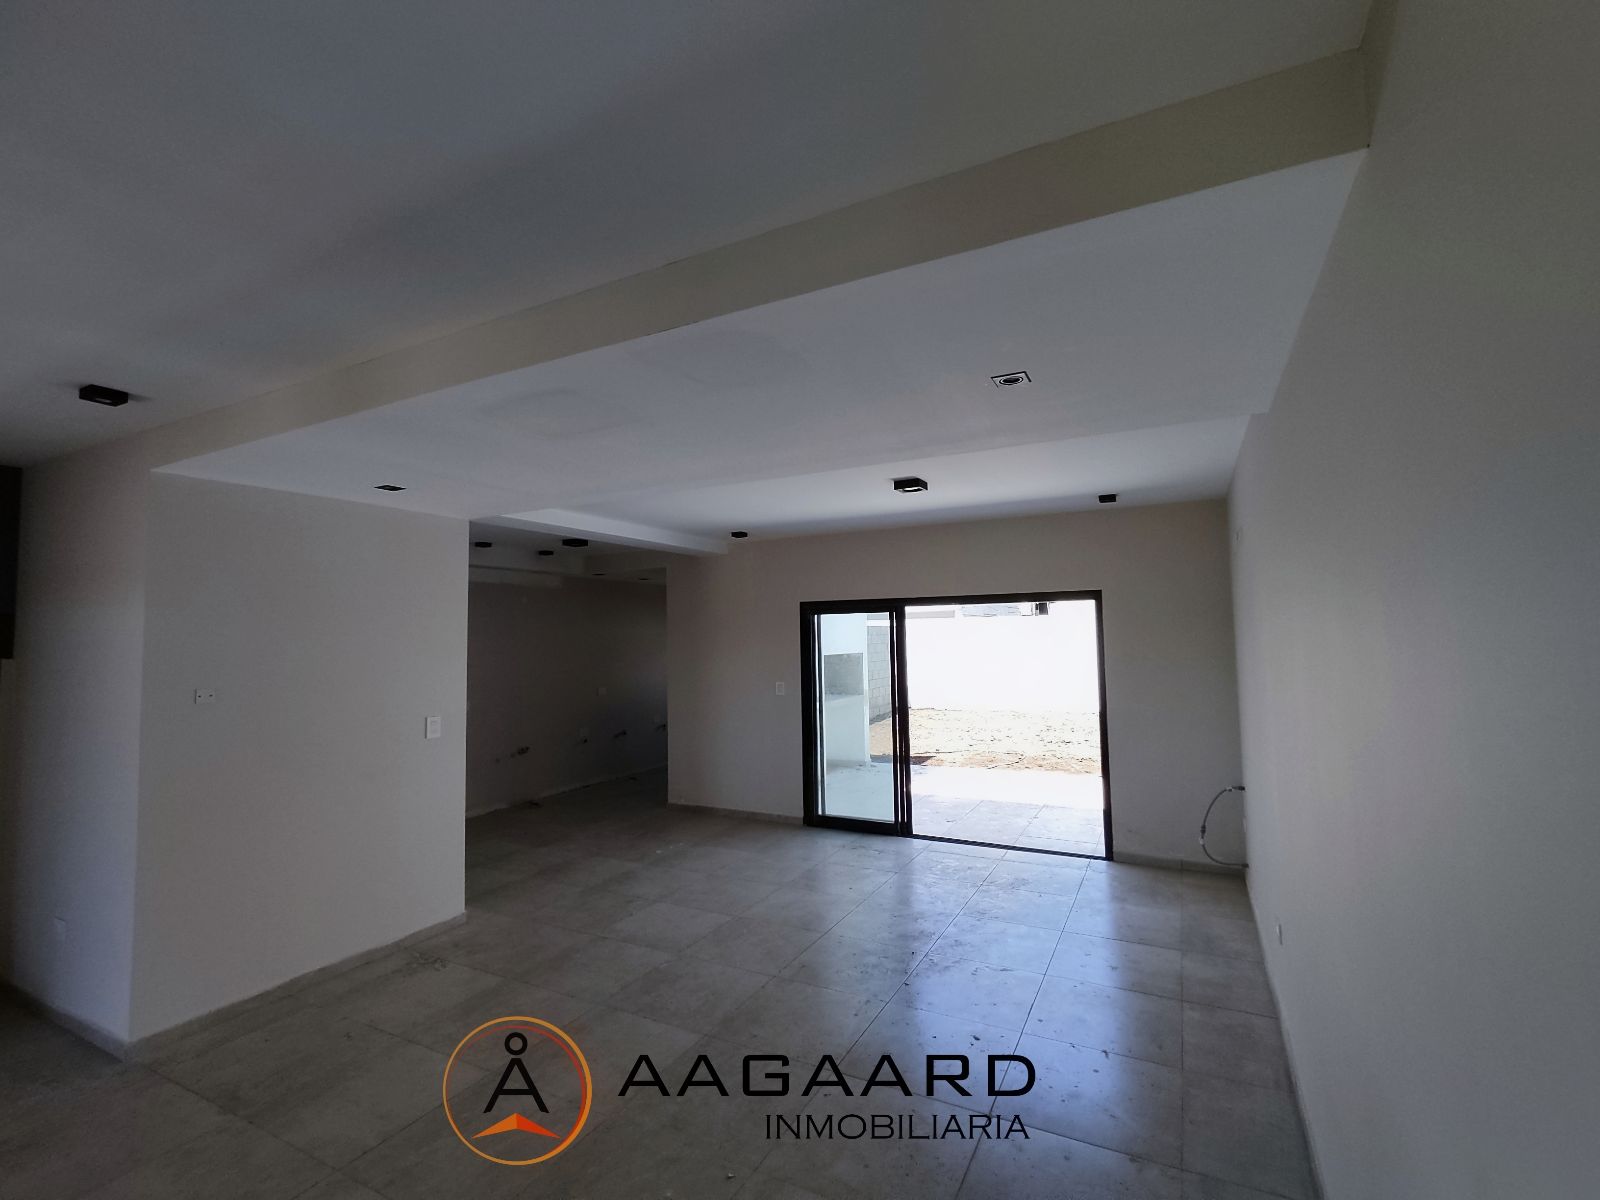 #4900038 | Sale | Horizontal Property | Solares De Ycho Cruz (AAGAARD INMOBILIARIA)